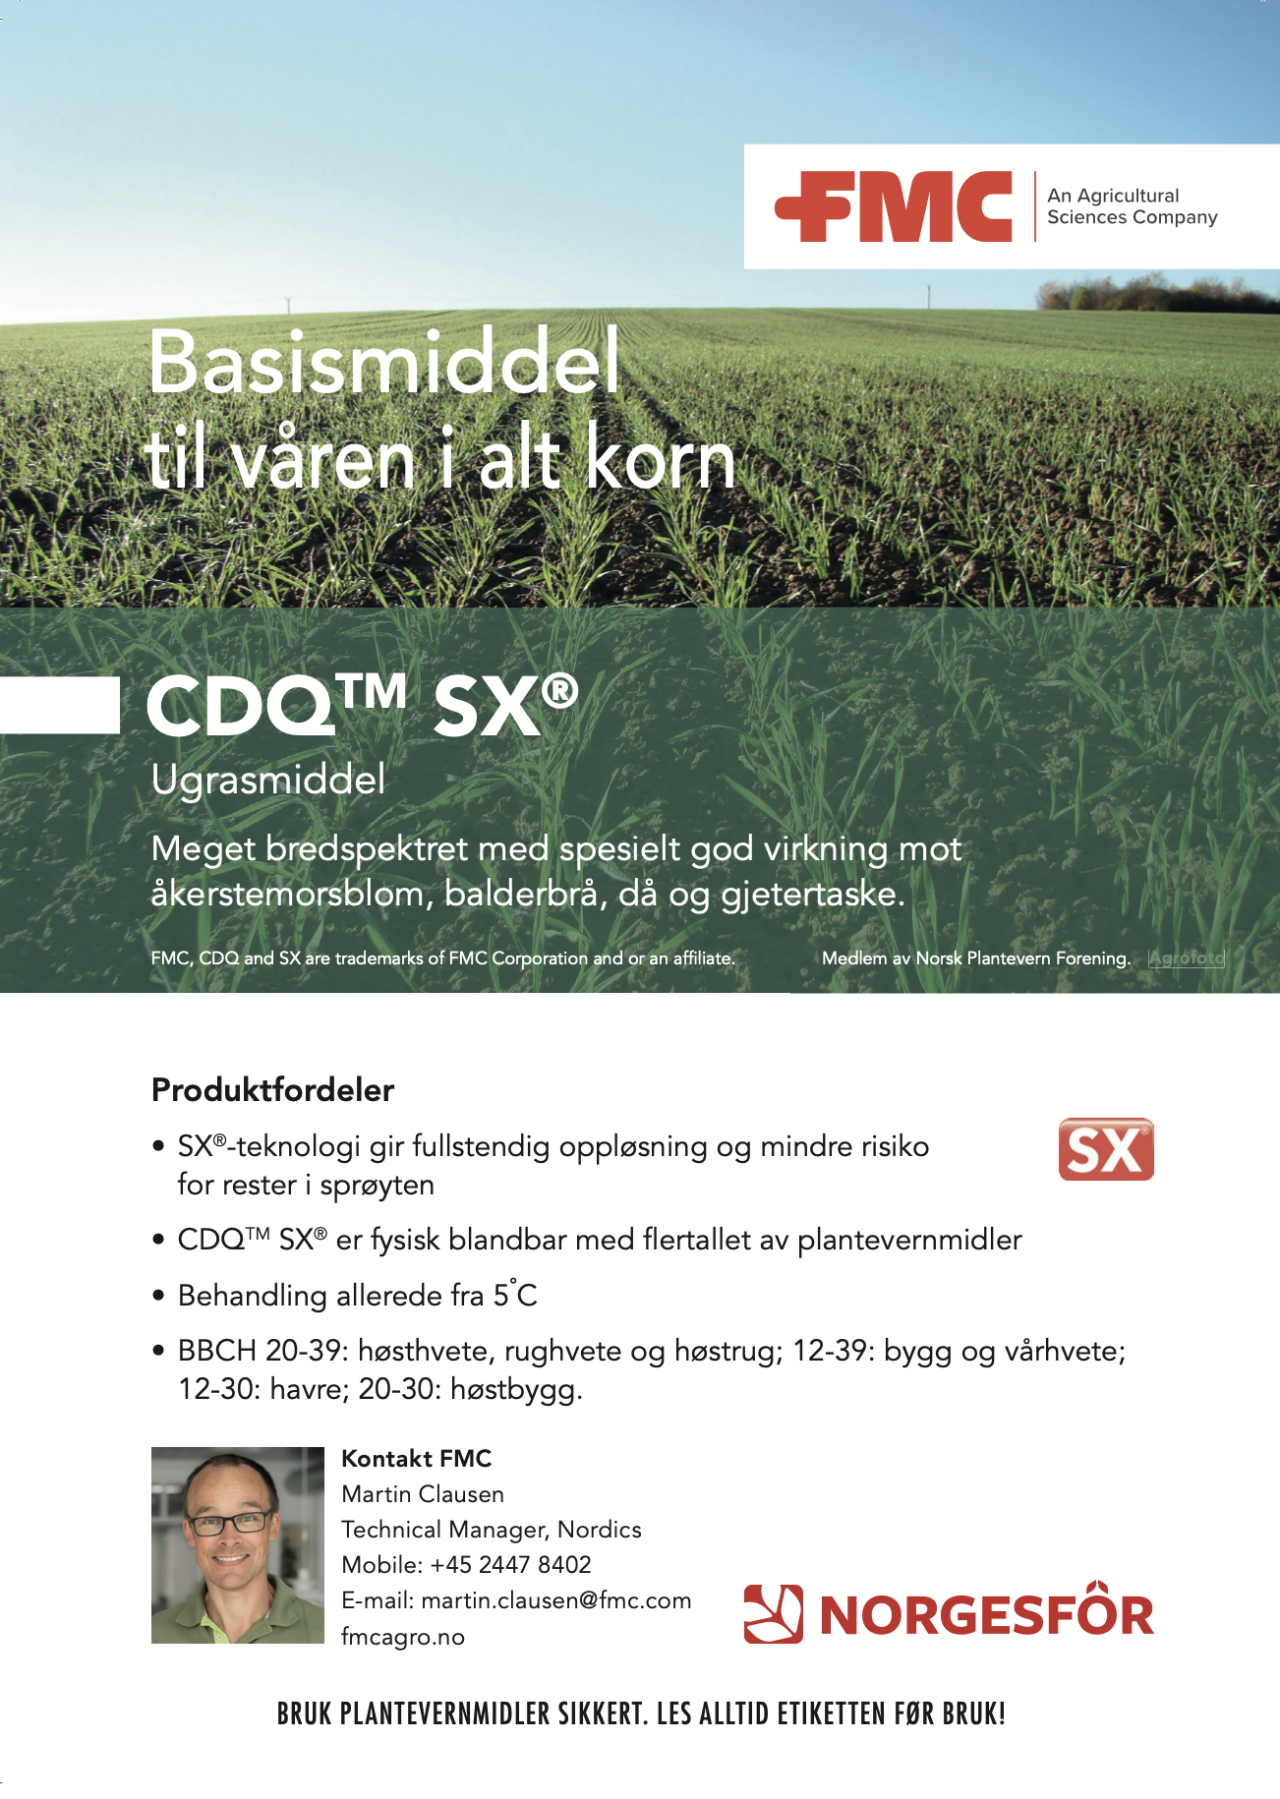 Annonse, CDQ SX - Basismiddel til våren i alt korn, behandling allerede fra 5°C.